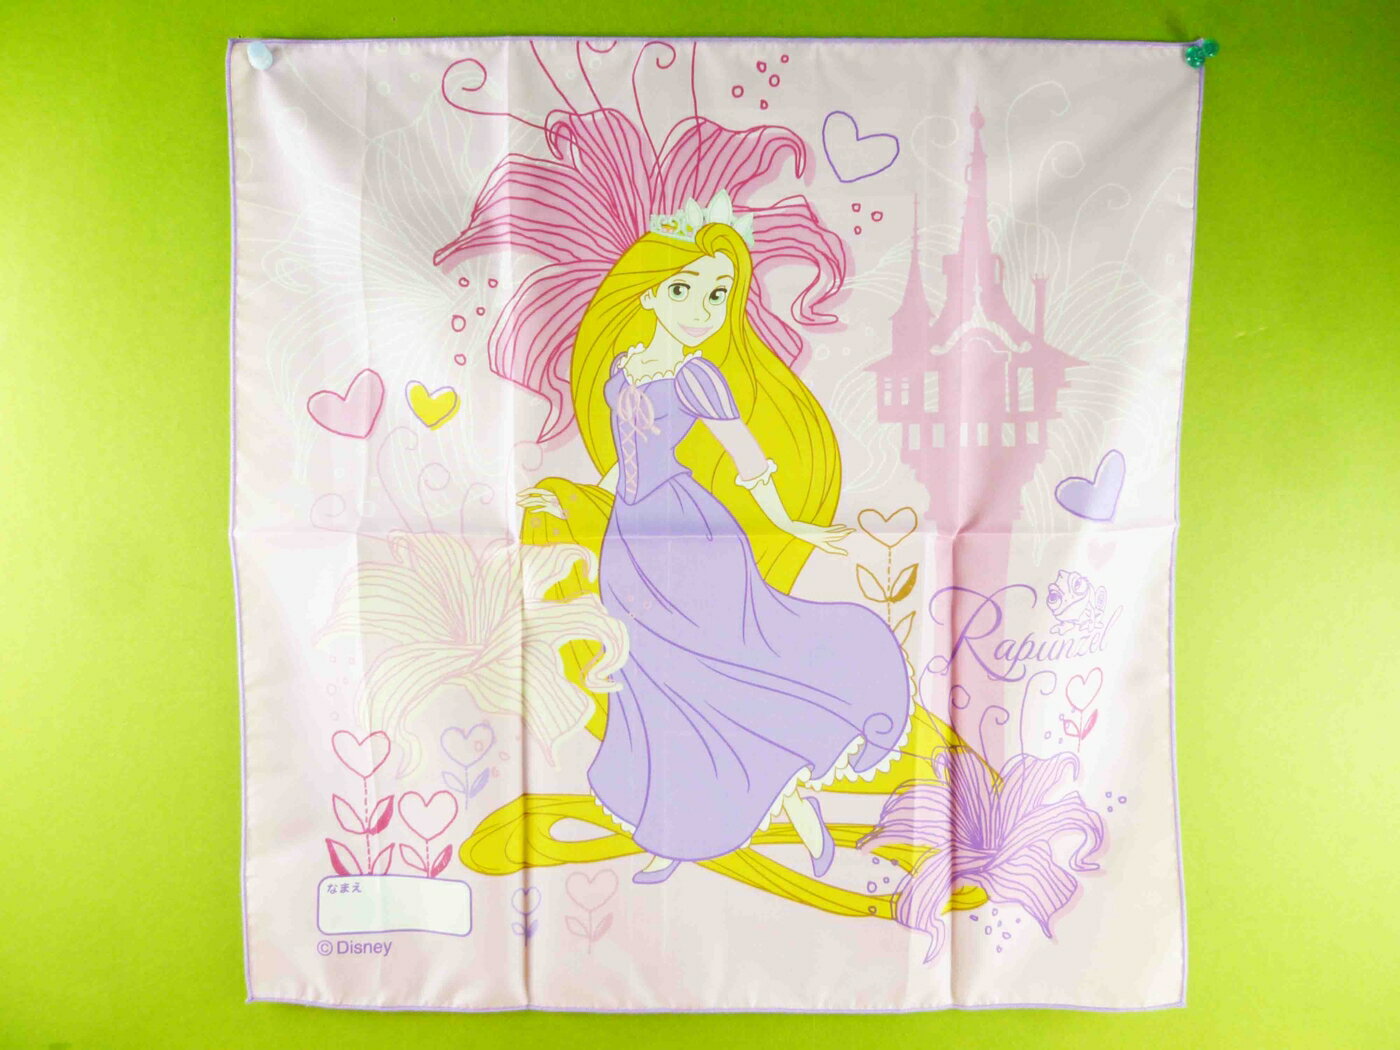 【震撼精品百貨】Disney Princess迪士尼公主魔髮奇緣樂佩公主 Rapunzel-手帕-粉色城堡 震撼日式精品百貨